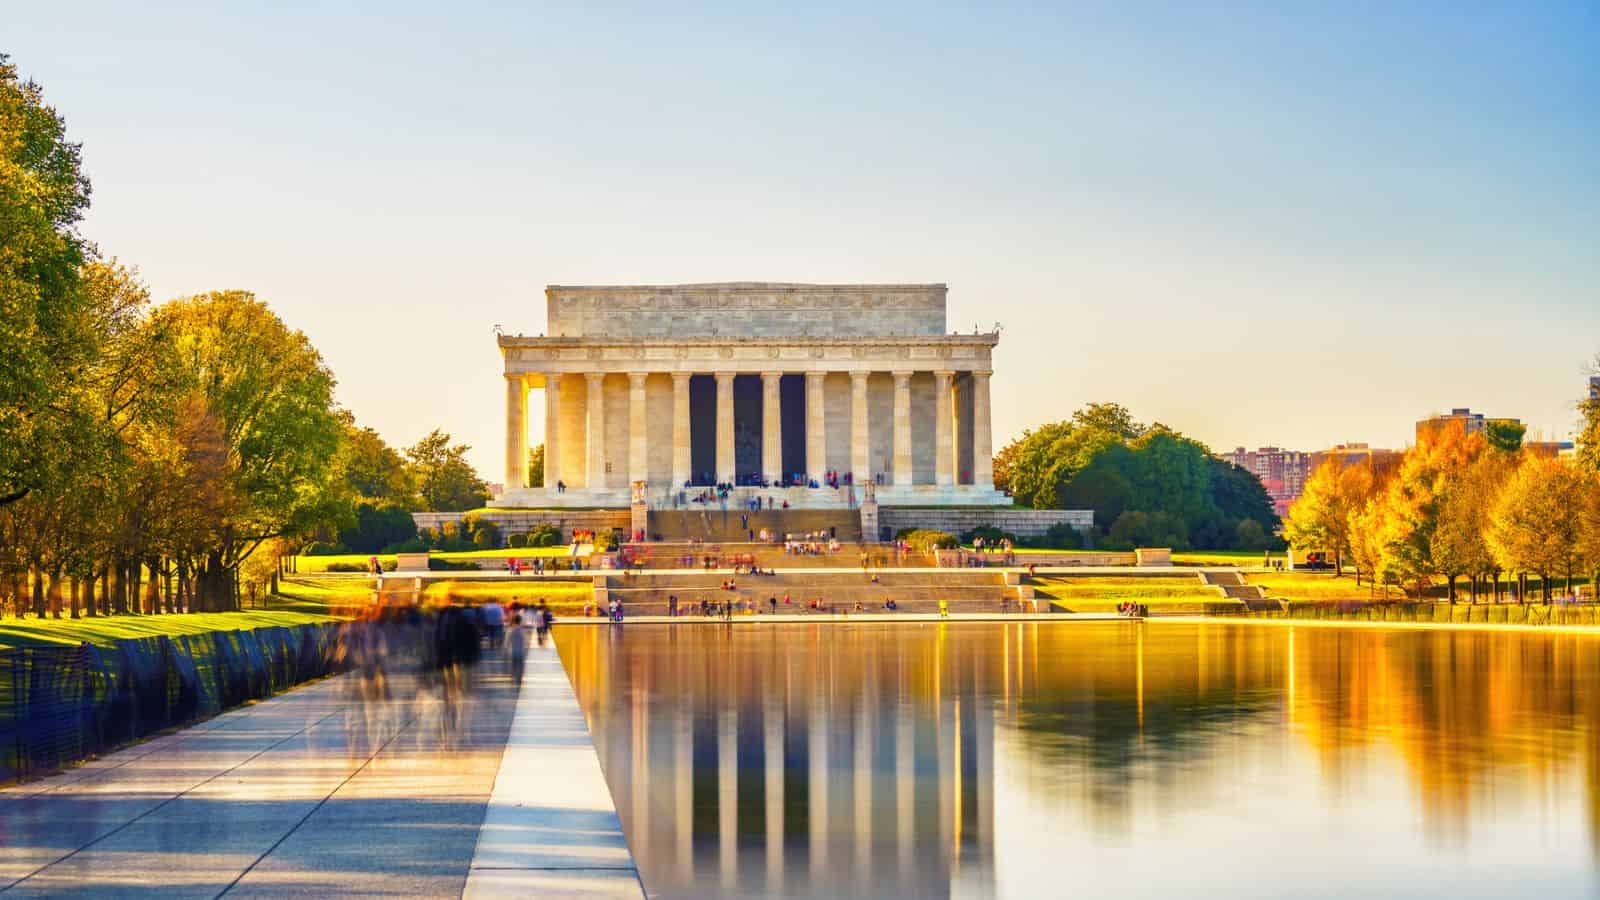 The Lincoln Memorial Washington D.C